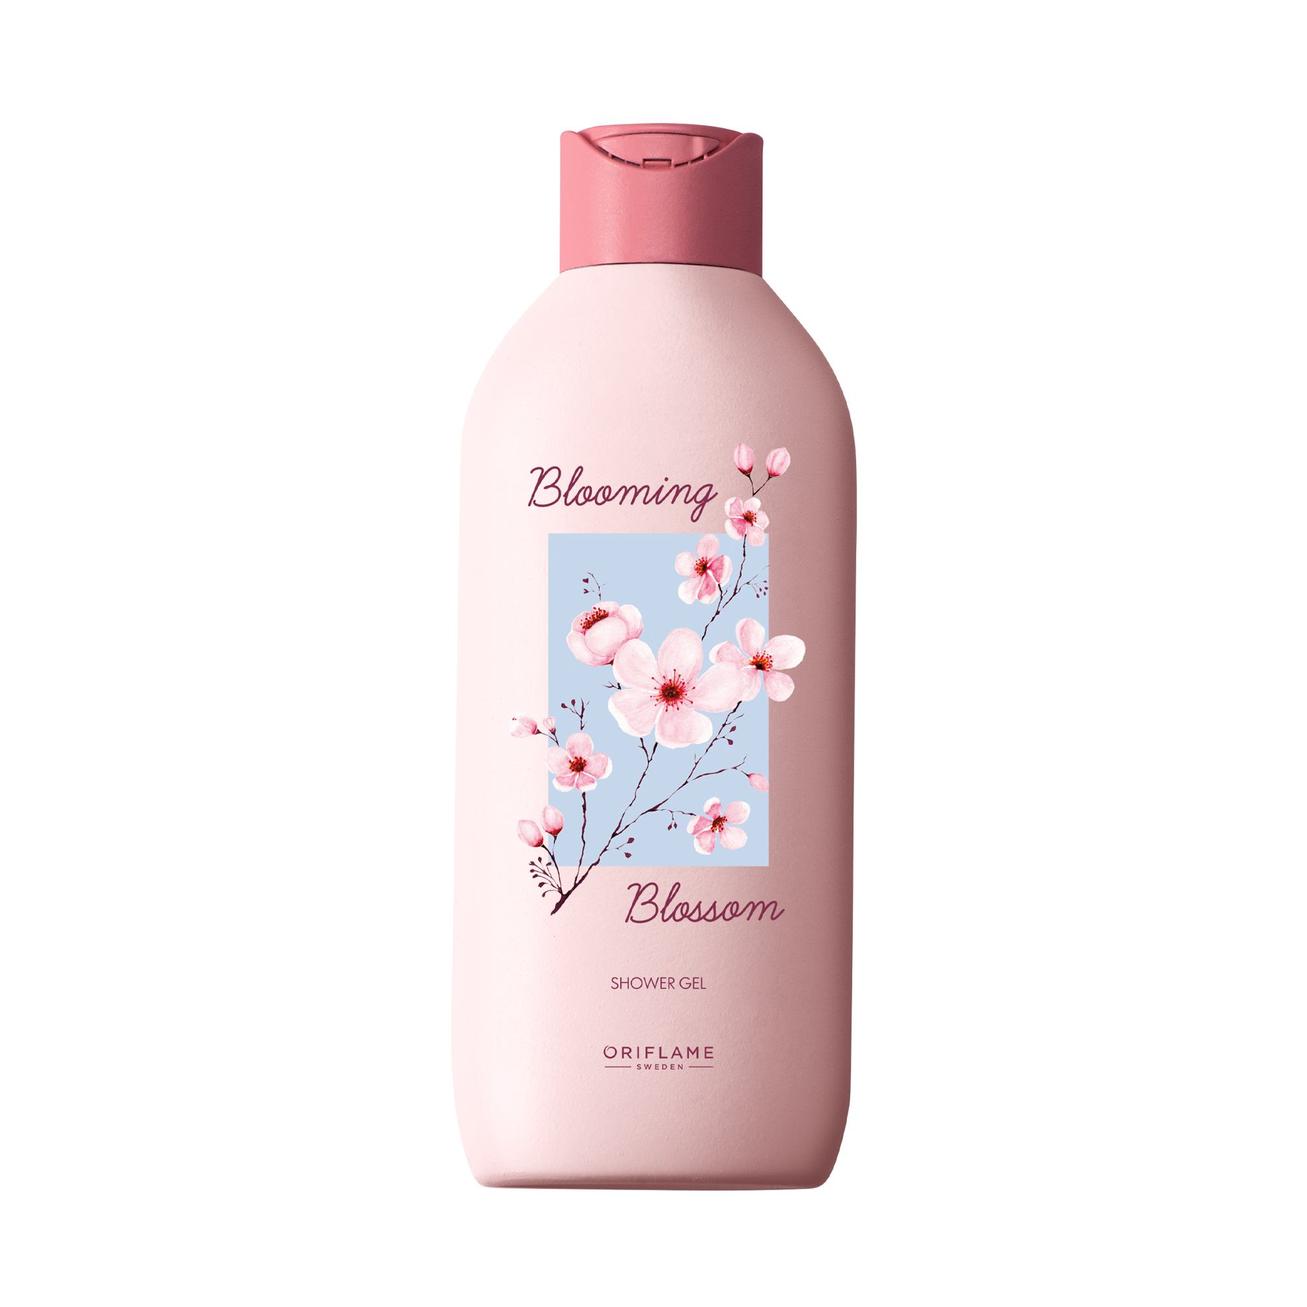 Oferta de Gel de Banho Blooming Blossom por 9,5€ em Oriflame